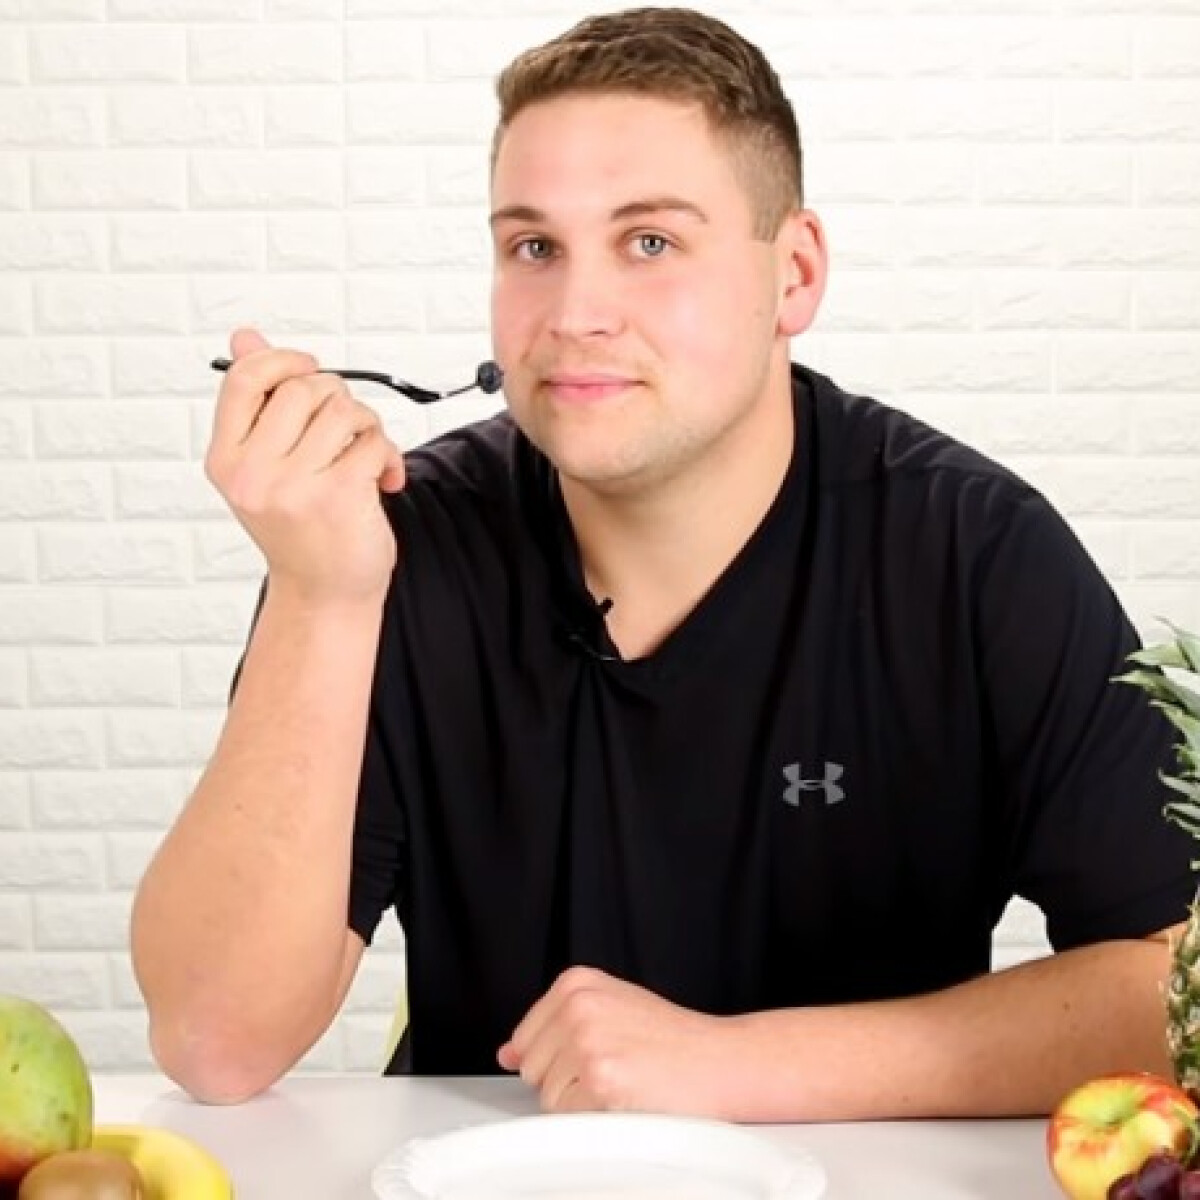 Ez a srác még sosem evett gyümölcsöt - így reagált az áfonyára és a kivire